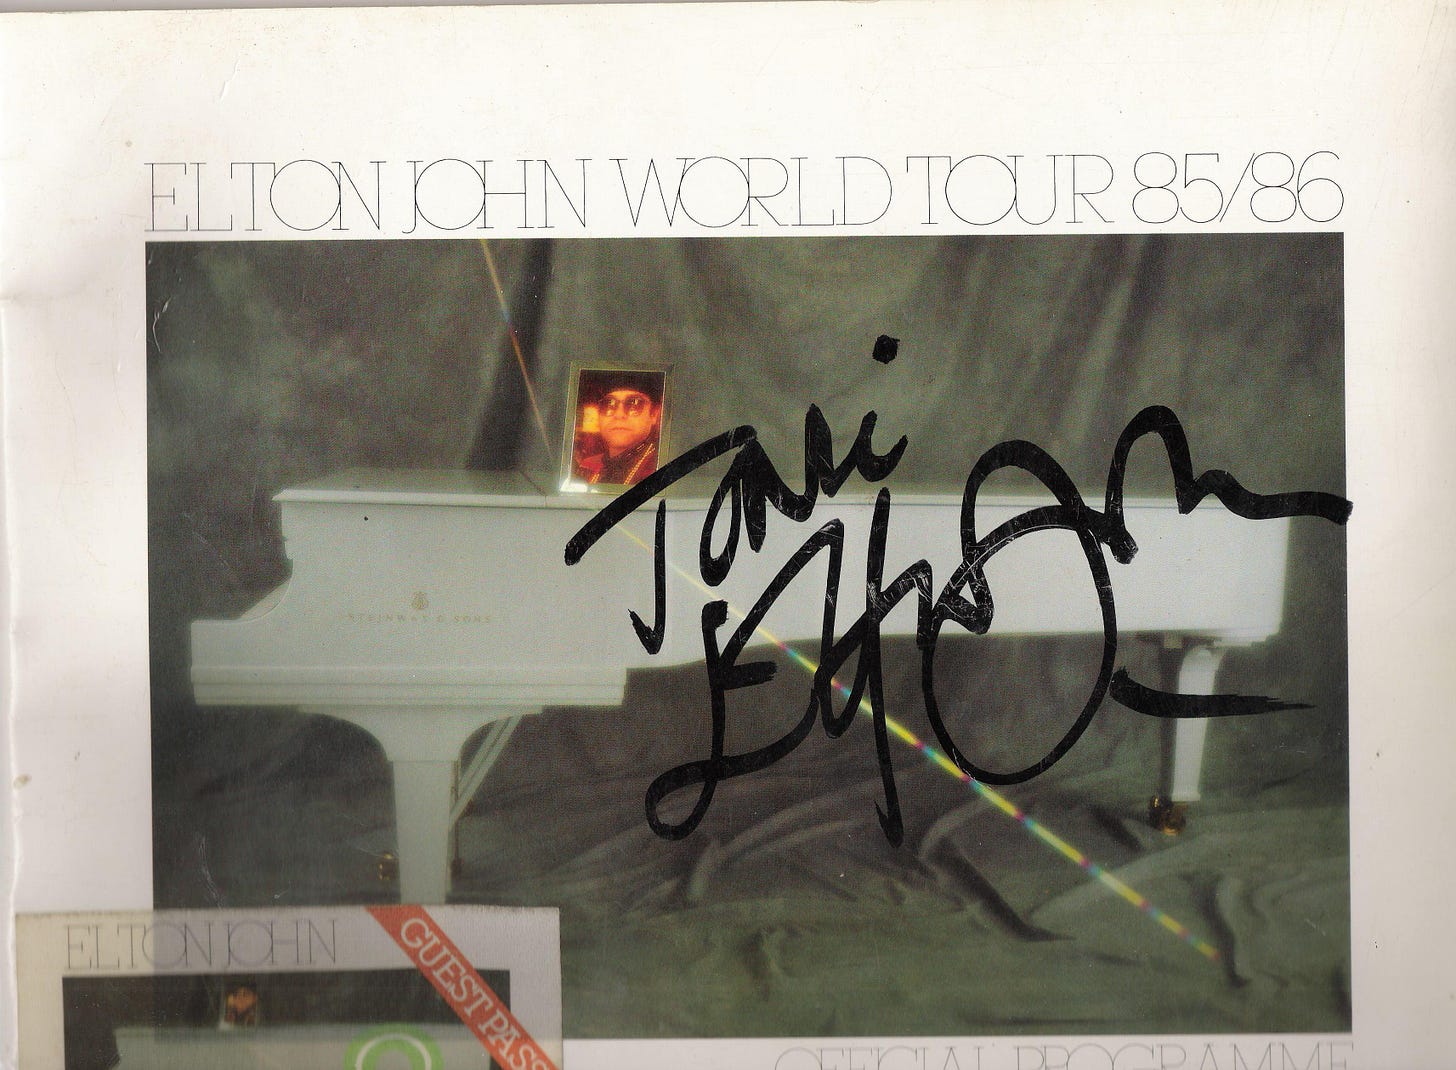 Elton John World Tour 85/86